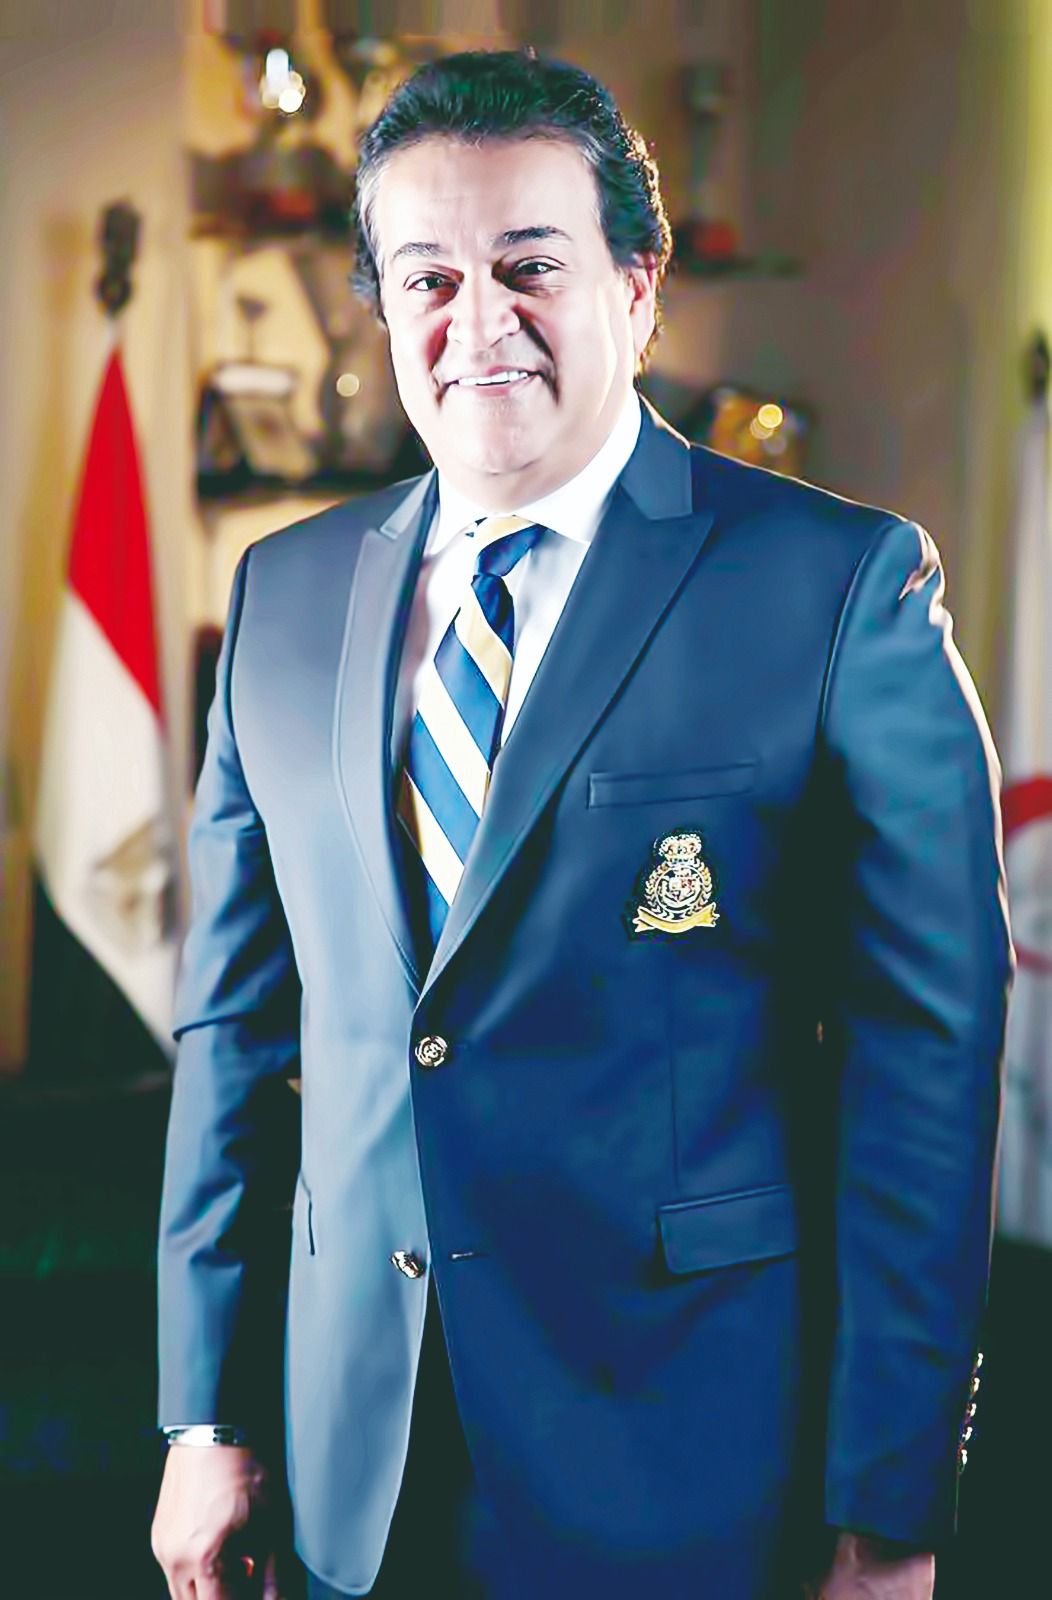 الدكتور خالد عبد الغفار، وزير الصحة والسكان